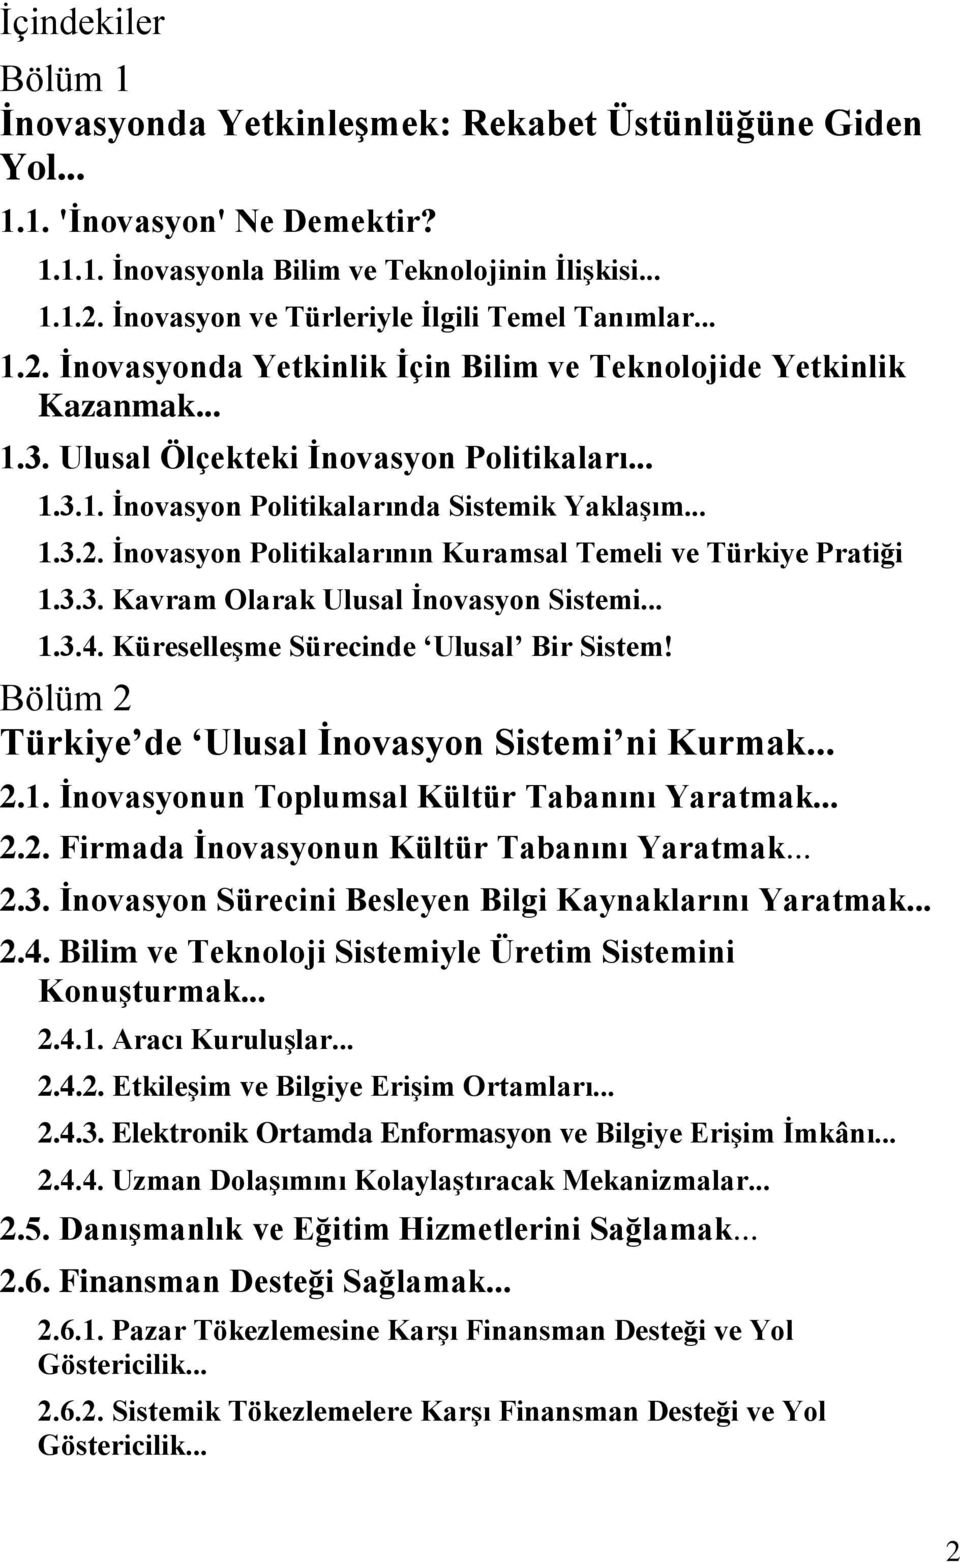 .. 1.3.2. İnovasyon Politikalarının Kuramsal Temeli ve Türkiye Pratiği 1.3.3. Kavram Olarak Ulusal İnovasyon Sistemi... 1.3.4. Küreselleşme Sürecinde Ulusal Bir Sistem!